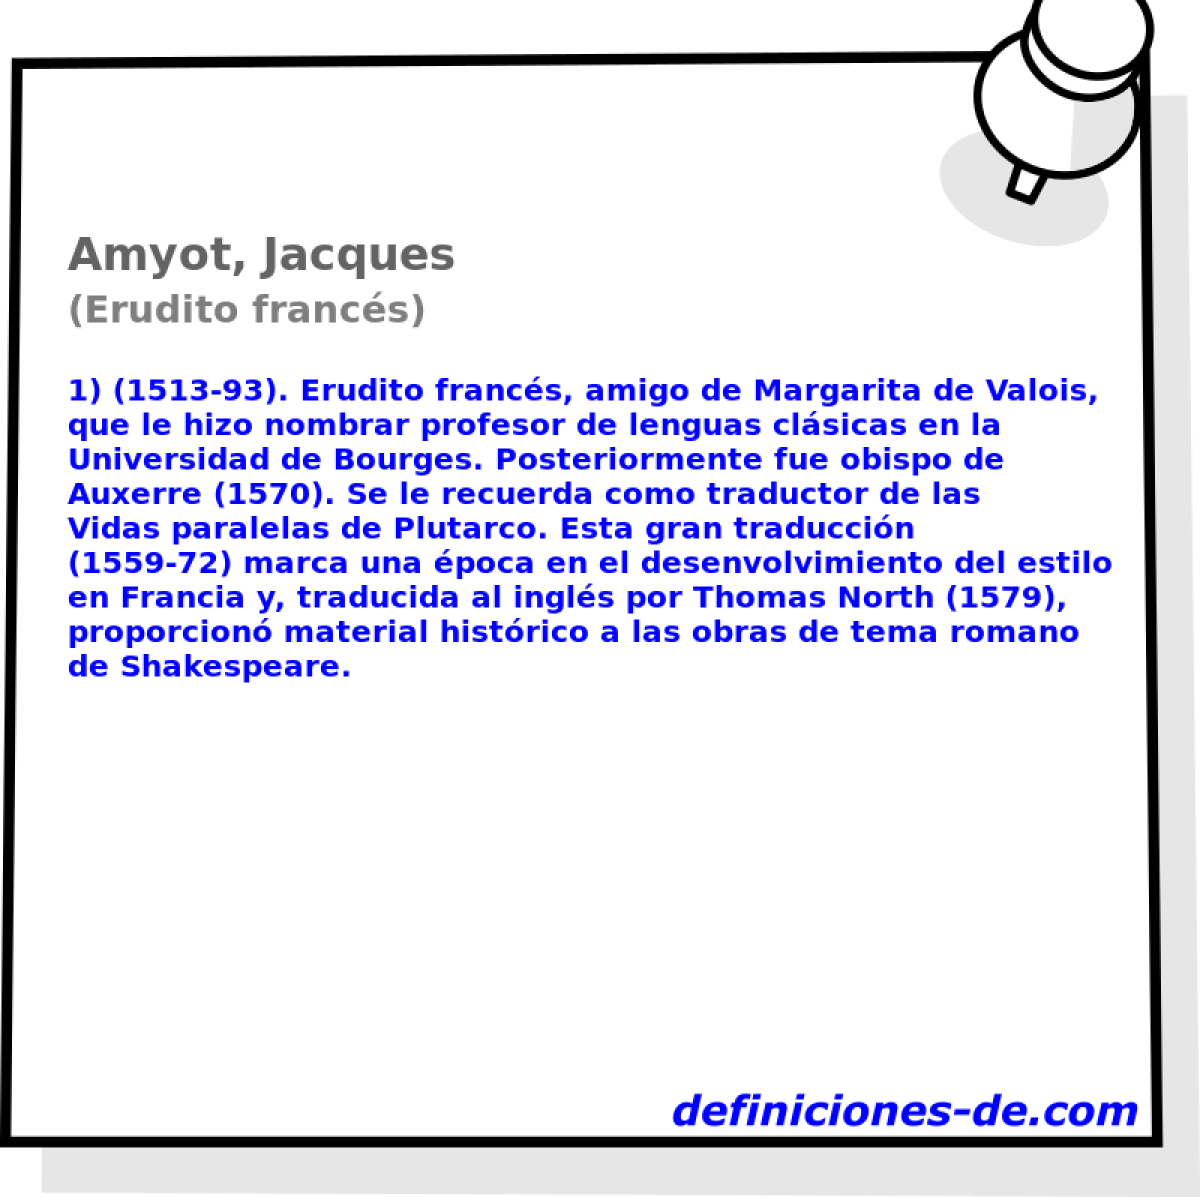 Amyot, Jacques (Erudito francs)